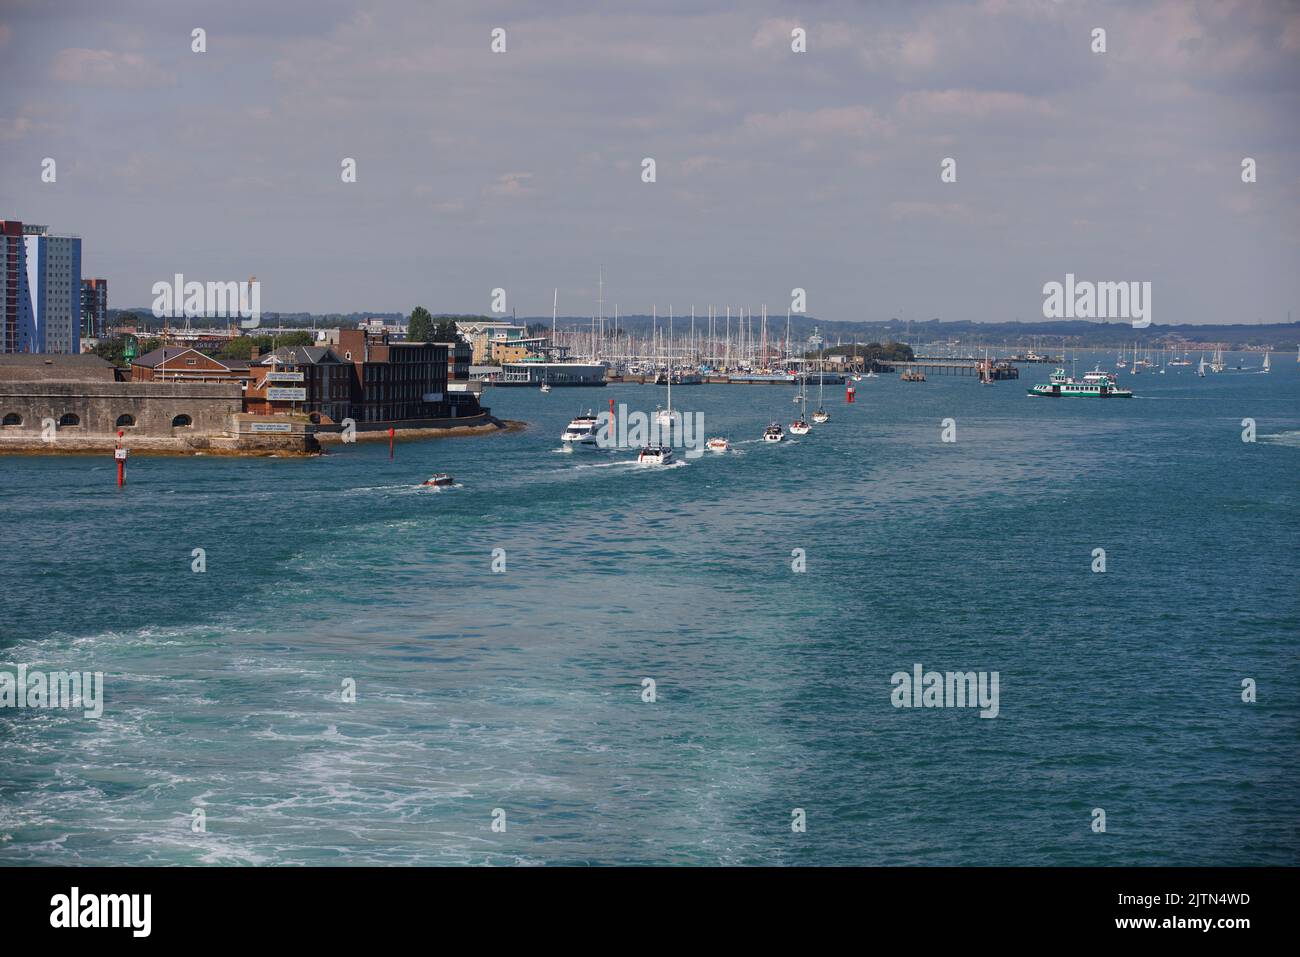 Der kleine Bootskanal wurde verwendet, um Portsmouth Harbour auf der linken Seite zu betreten, von einer Wightlink Fähre aus gesehen, die zur Isle of Wight abfährt. Stockfoto